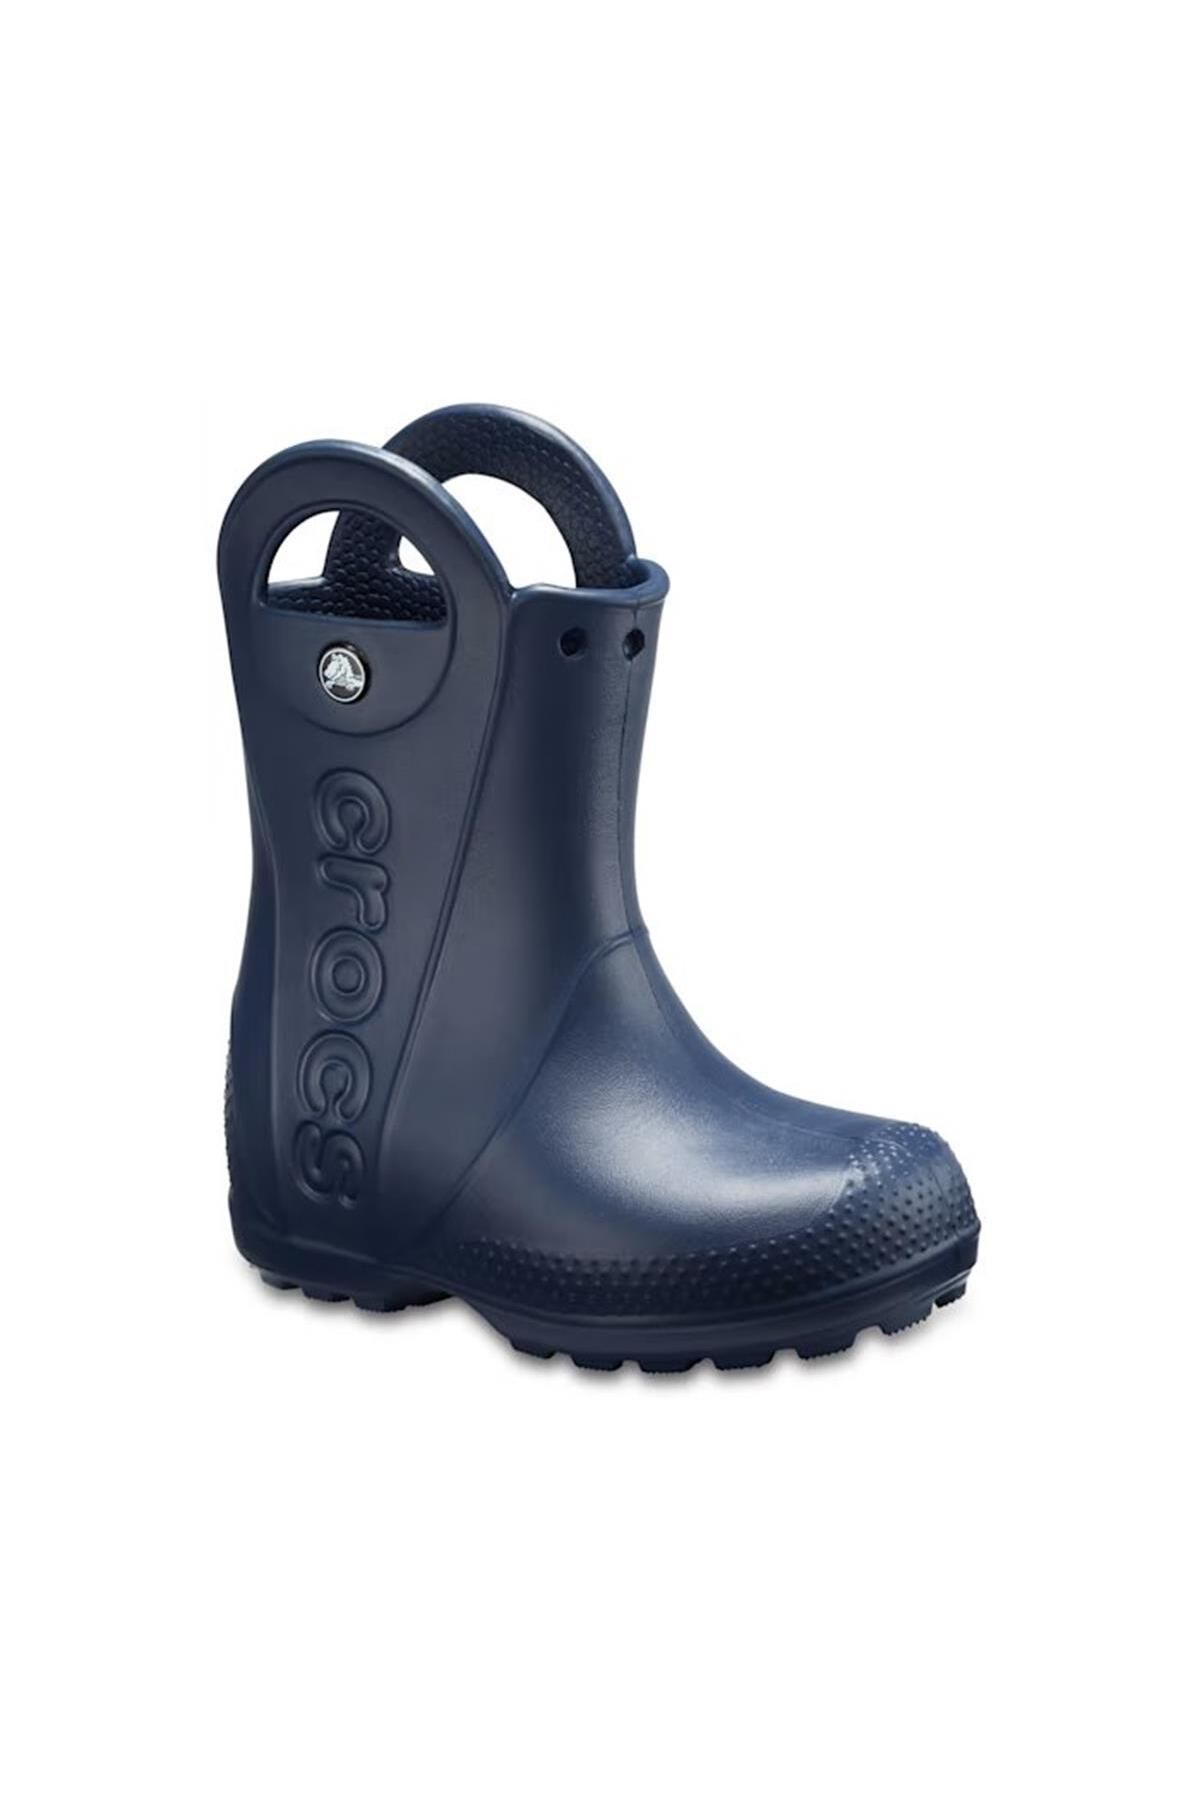 Crocs چکمه بارانی Handle It Kids Rain Boot 12803-410 نیروی دریایی